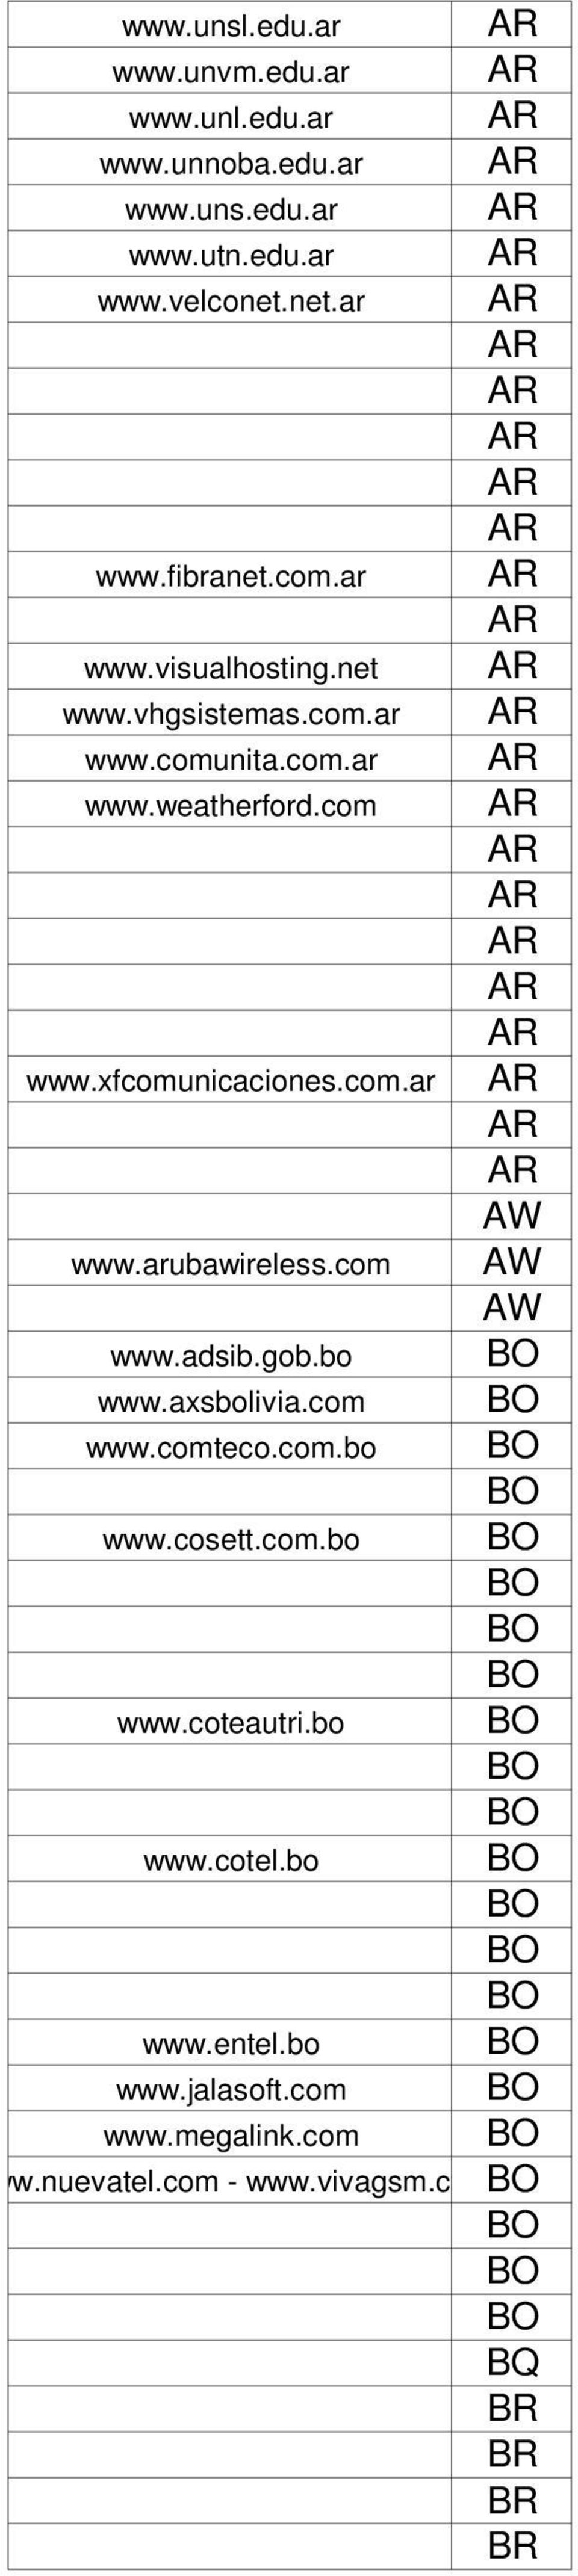 arubawireless.com AW AW www.adsib.gob.bo BO www.axsbolivia.com BO www.comteco.com.bo BO BO www.cosett.com.bo BO BO BO BO www.